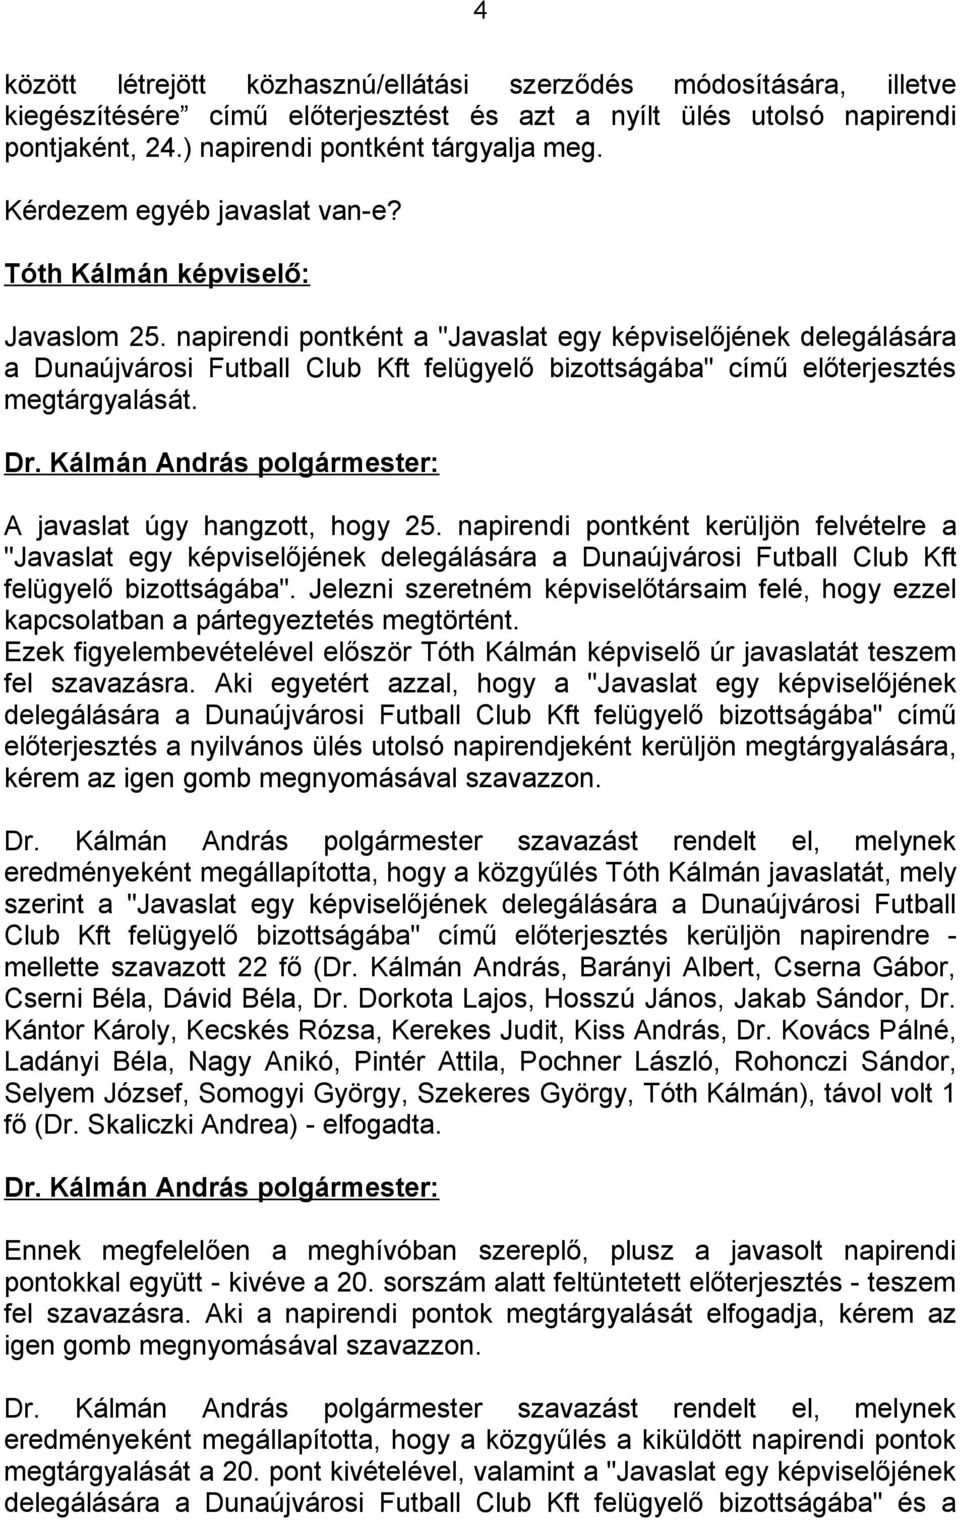 napirendi pontként a "Javaslat egy képviselőjének delegálására a Dunaújvárosi Futball Club Kft felügyelő bizottságába" című előterjesztés megtárgyalását. A javaslat úgy hangzott, hogy 25.